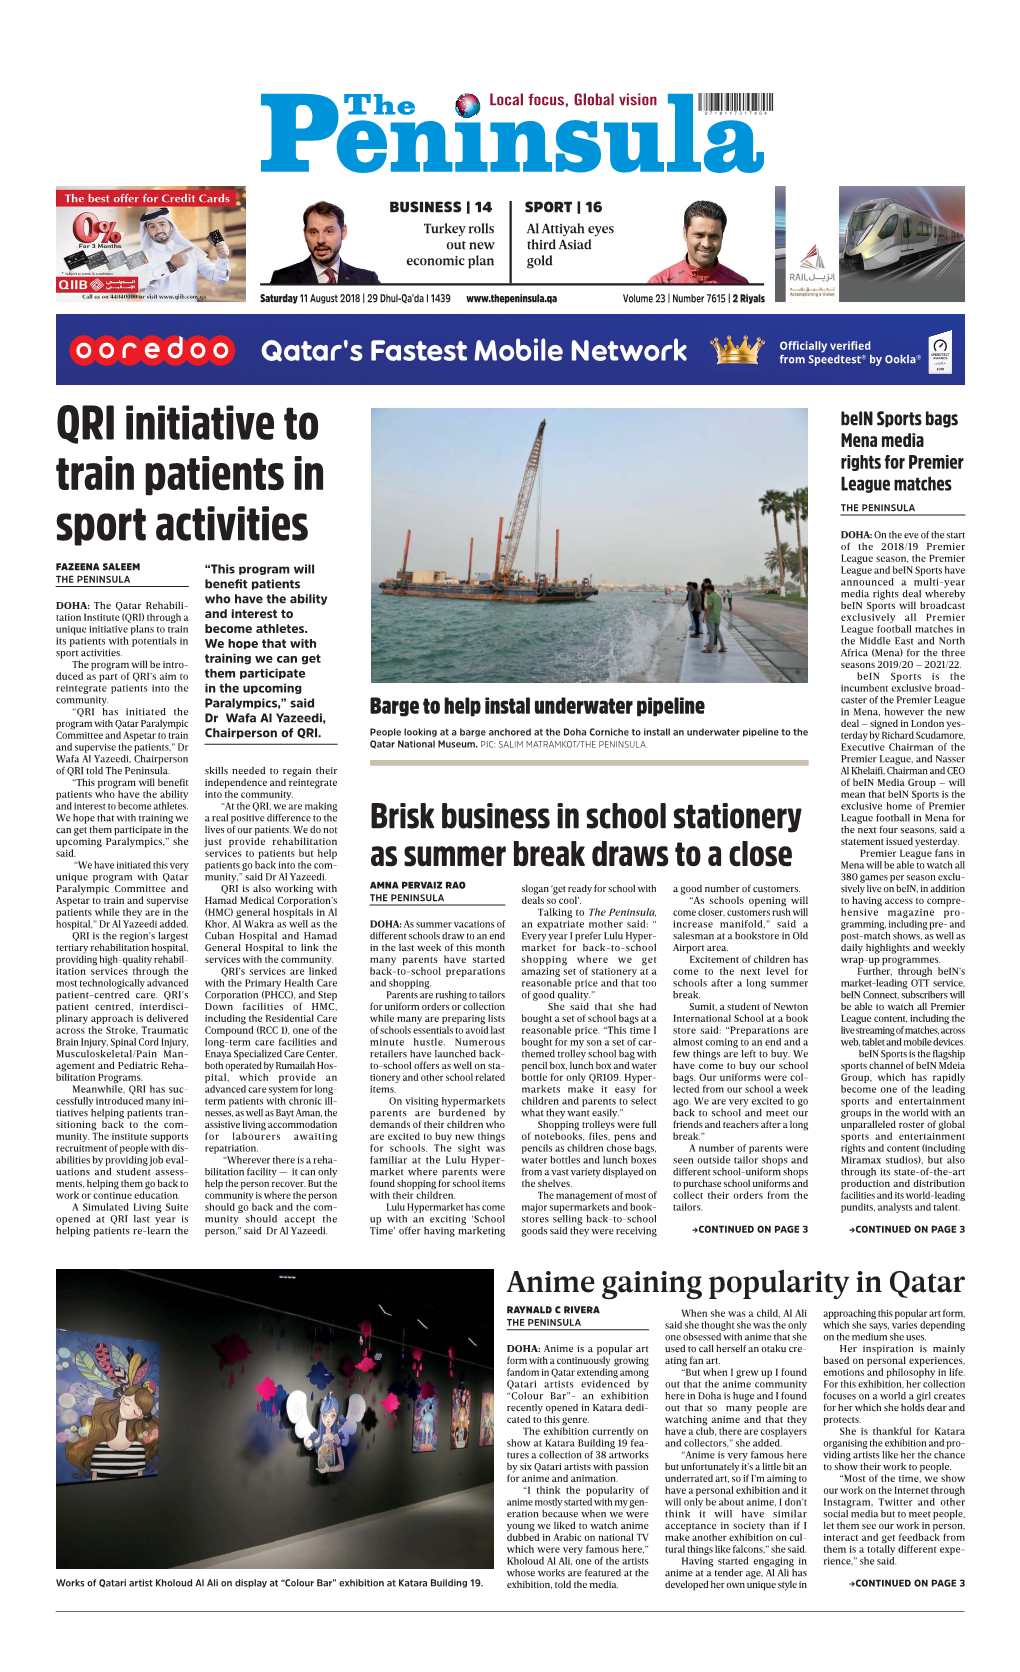 QRI Initiative to Train Patients in Sport Activities